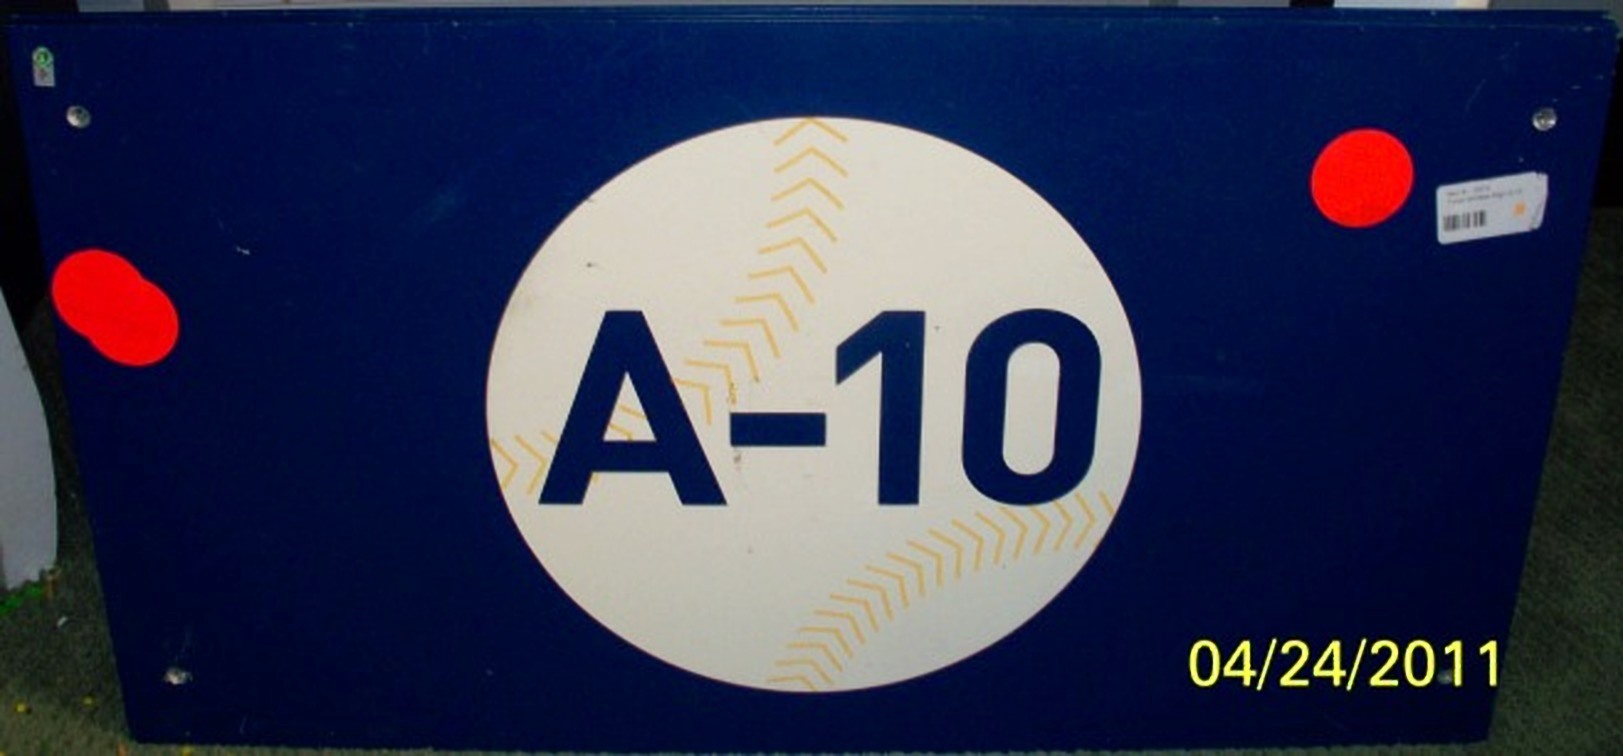 A-10.v1.jpg